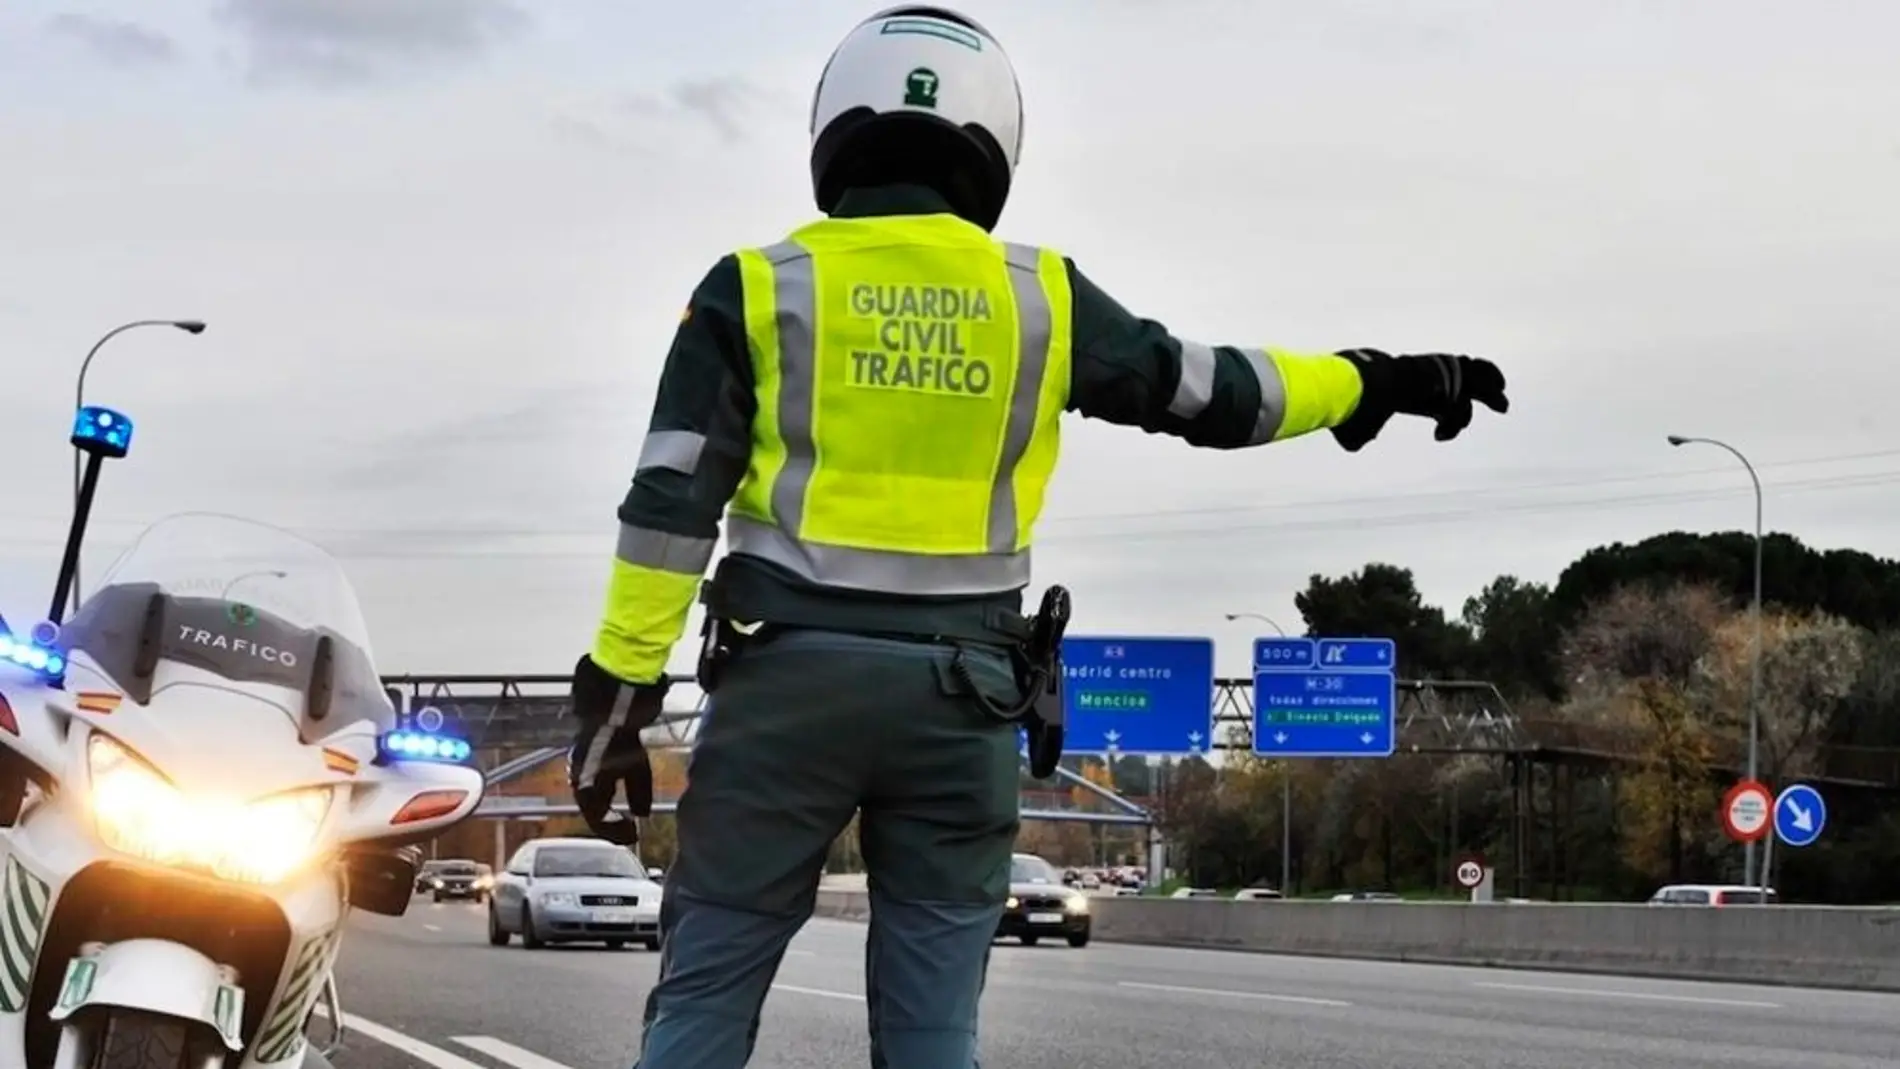 La DGT la vigilancia en carretera ante los 5 millones de desplazamientos previstos para el Puente de San José